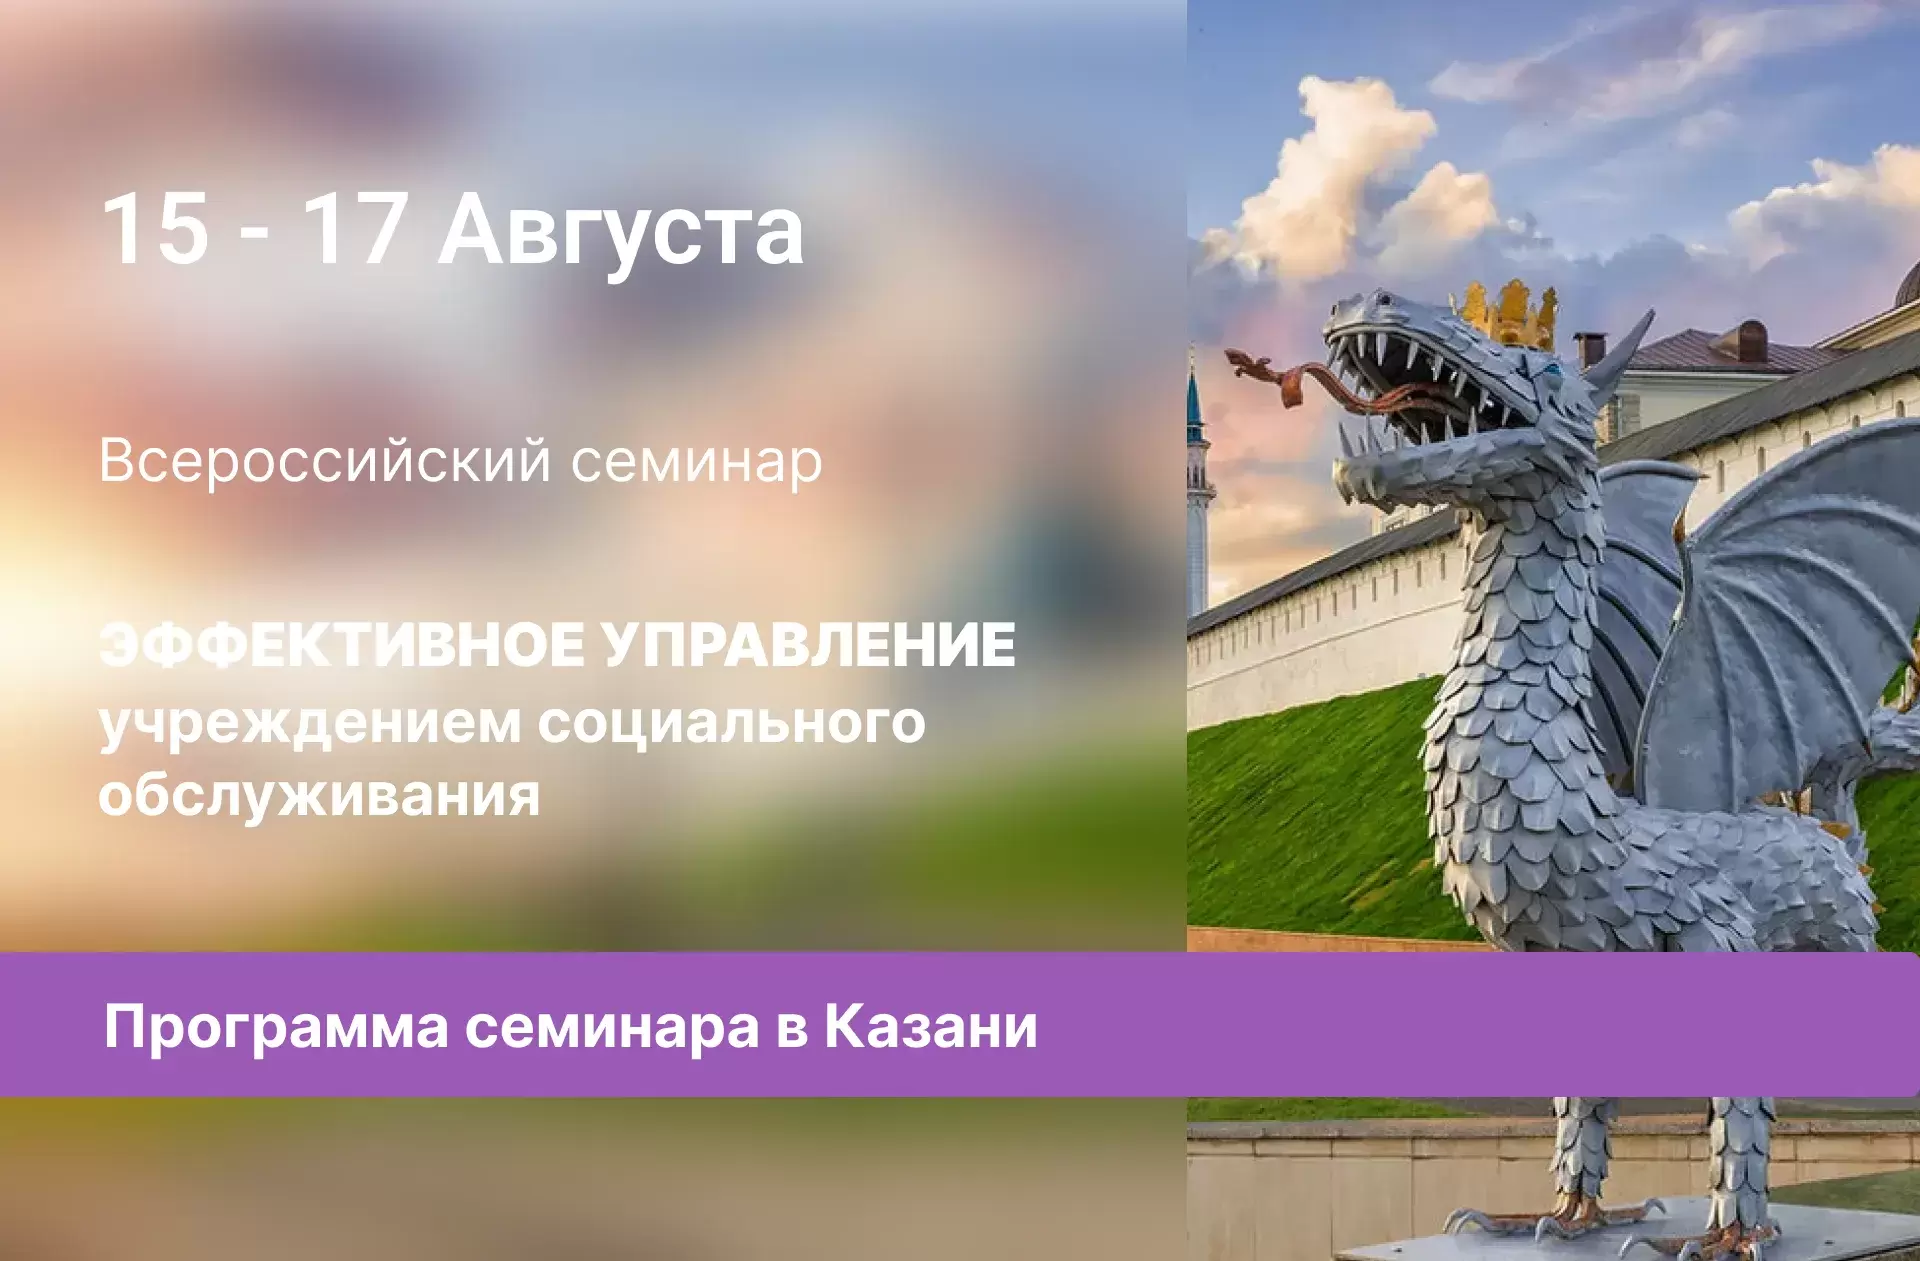 Программа семинара в Казани